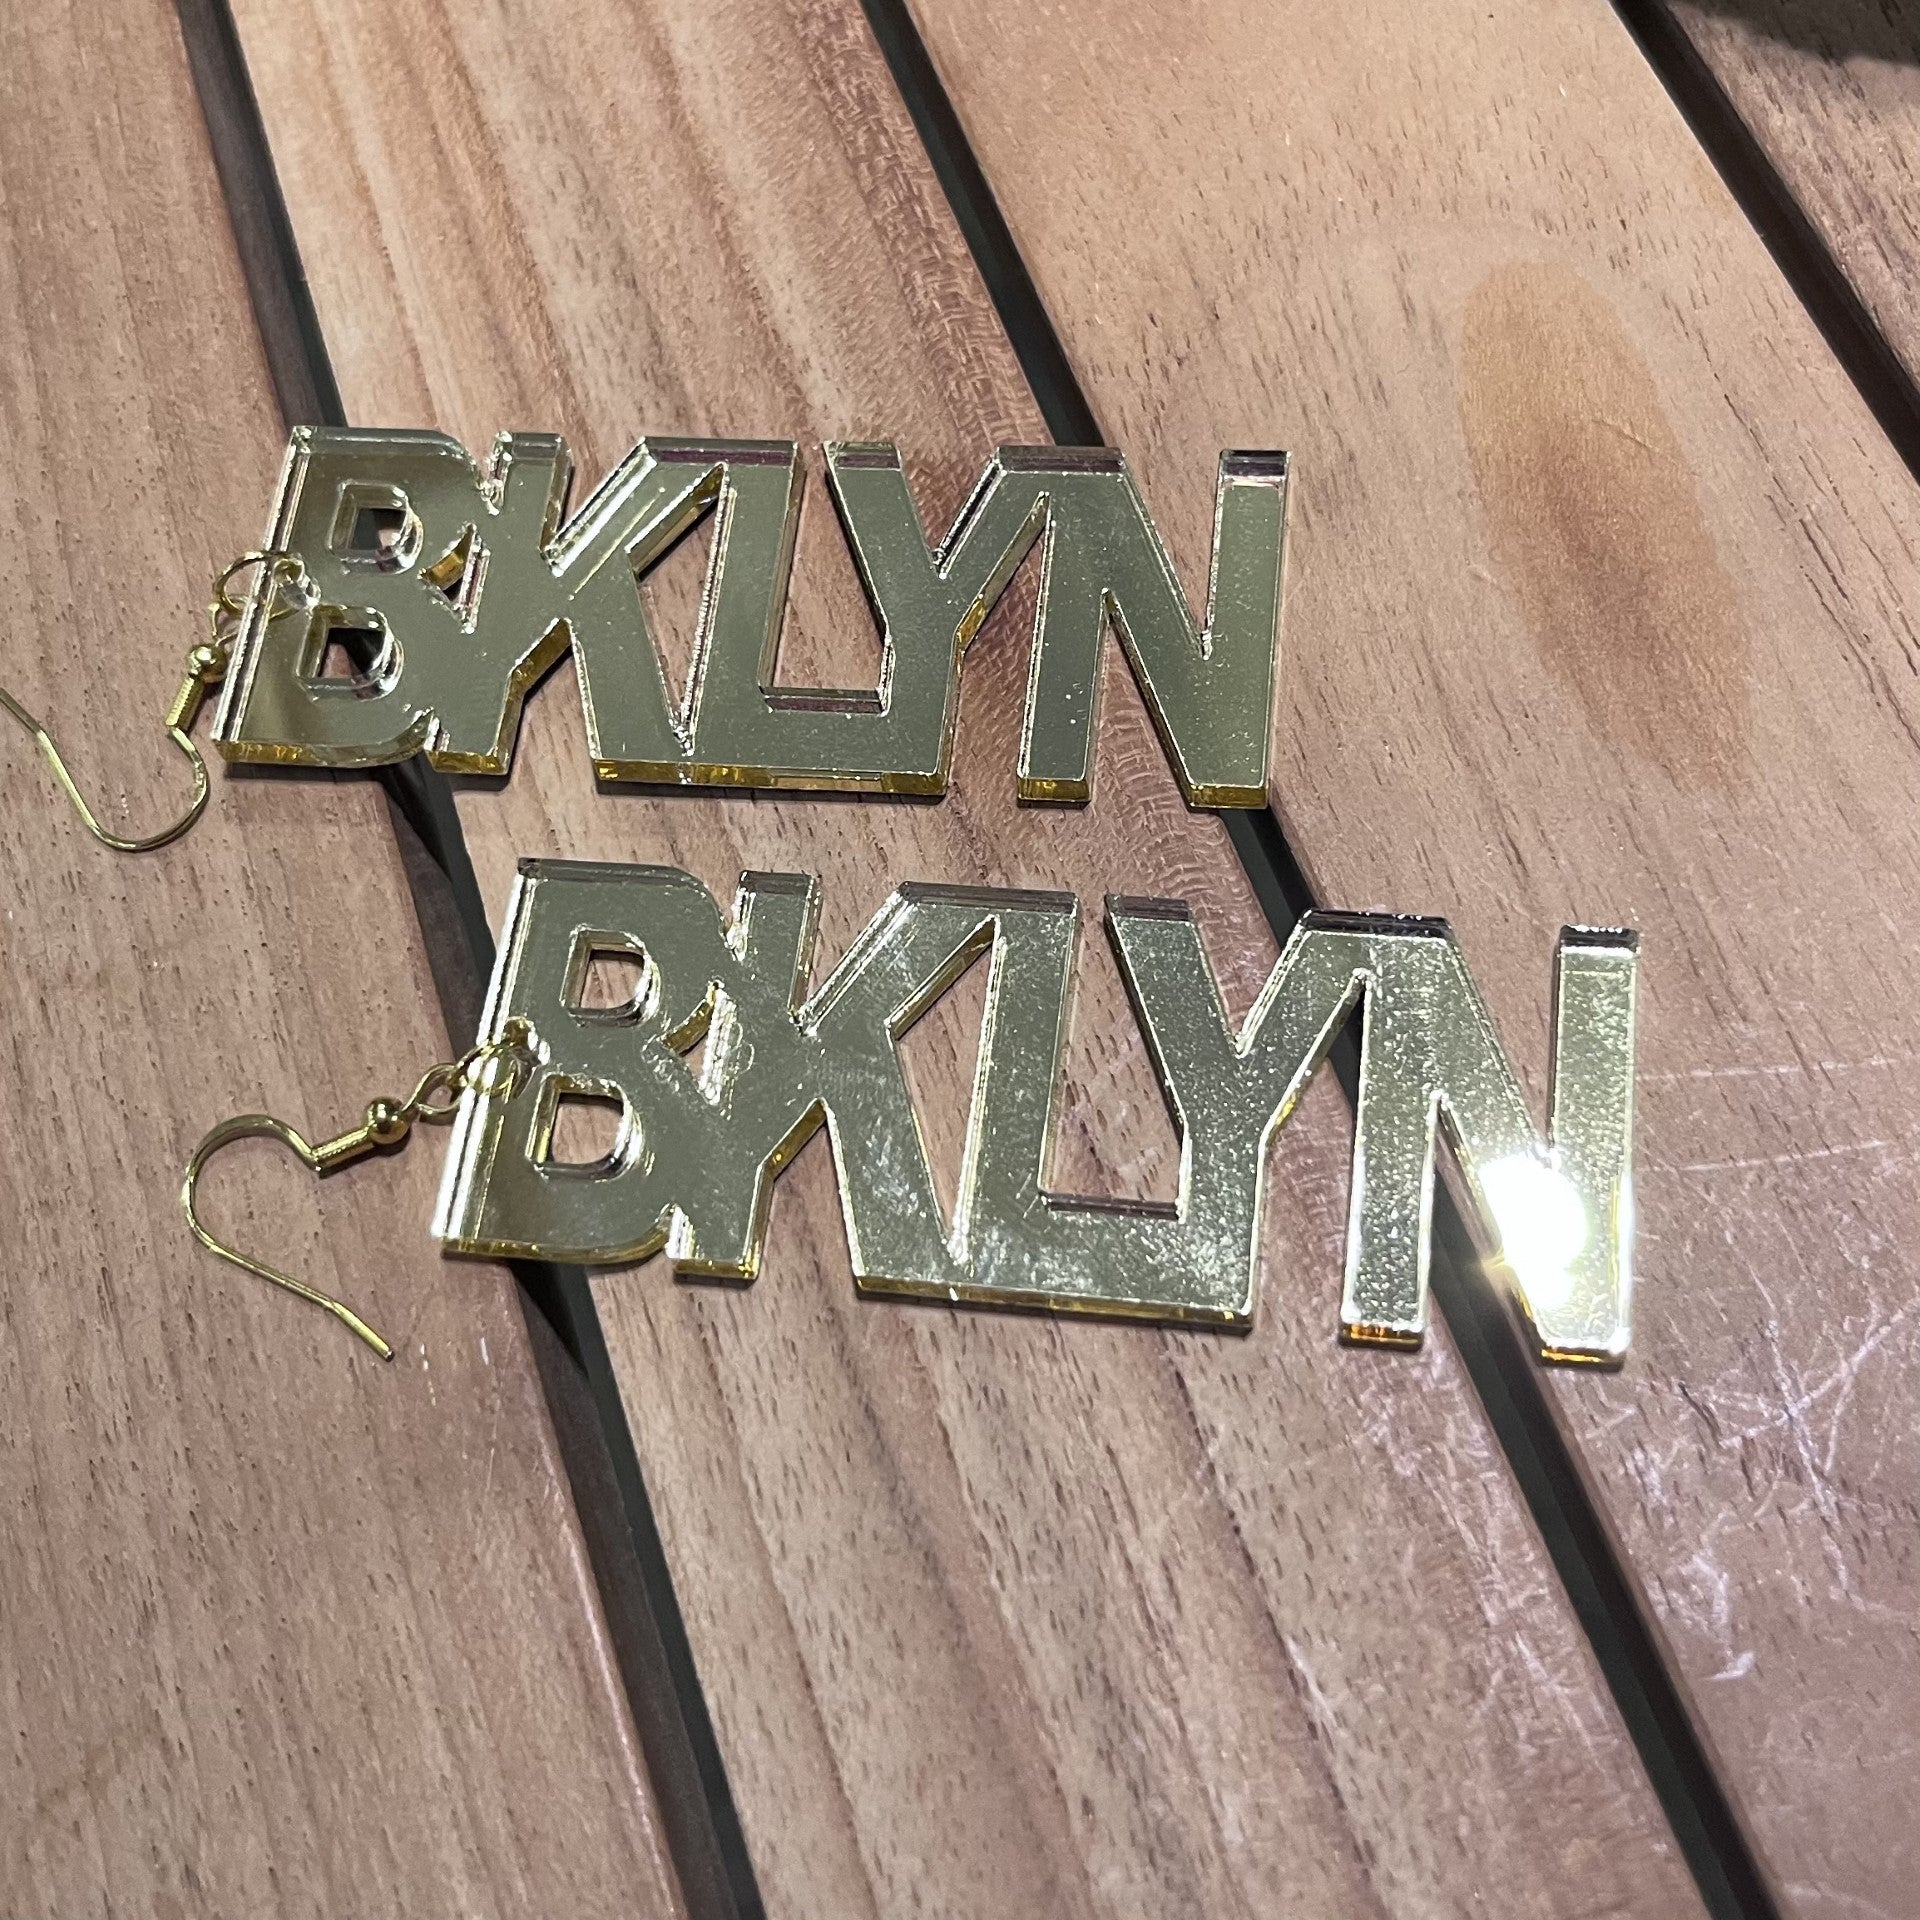 BKLYN Acrylic Earrings